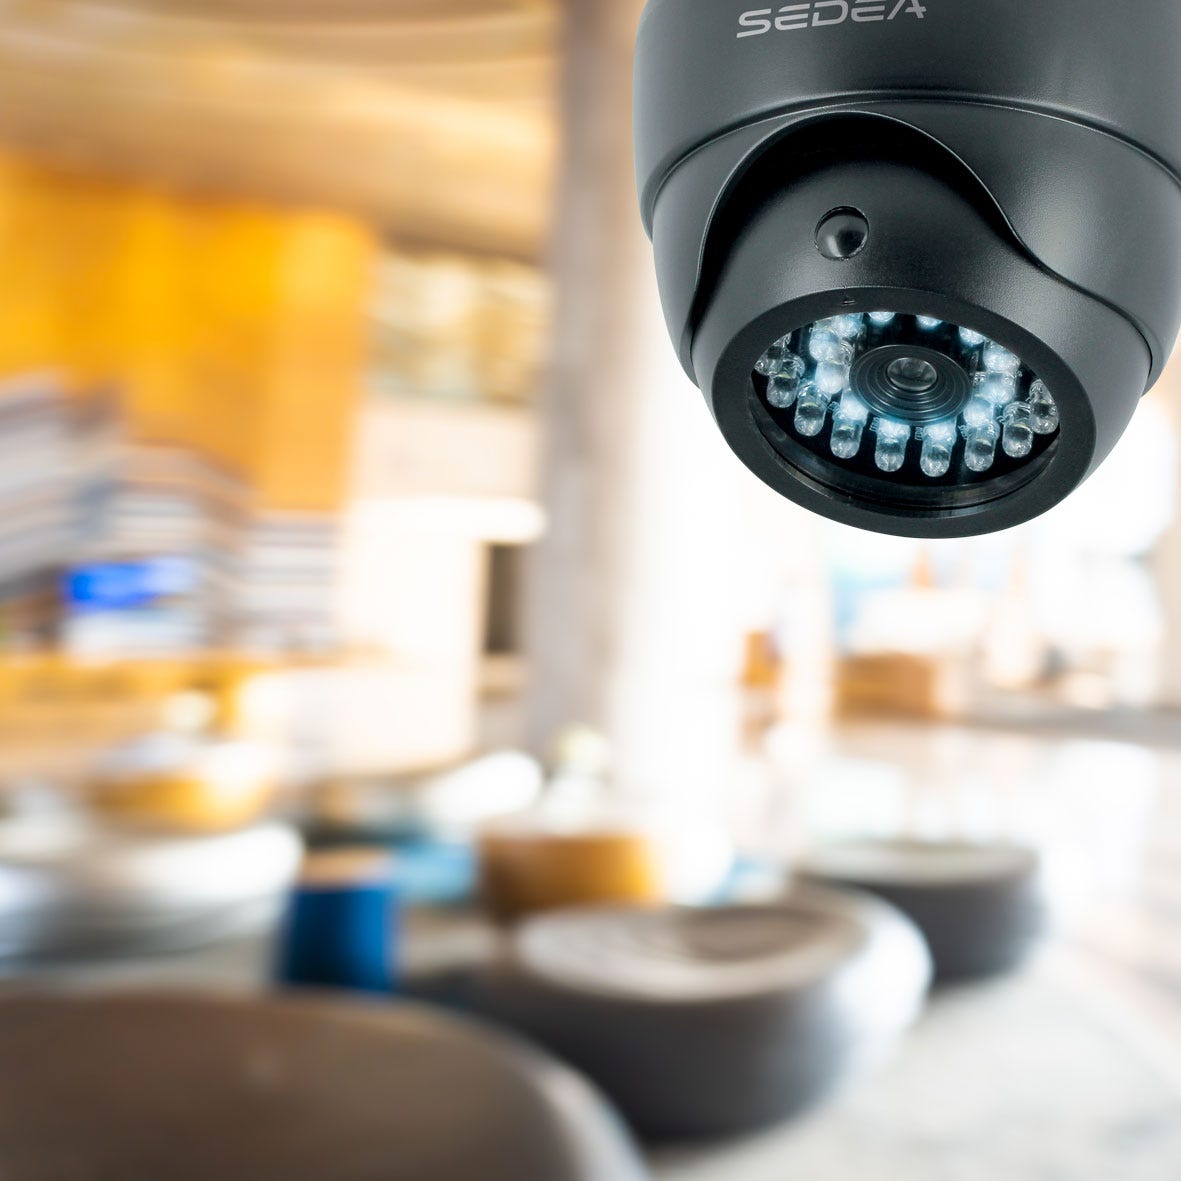 Caméra de surveillance factice type dôme avec fonction éclairage - SEDEA - 550985 2